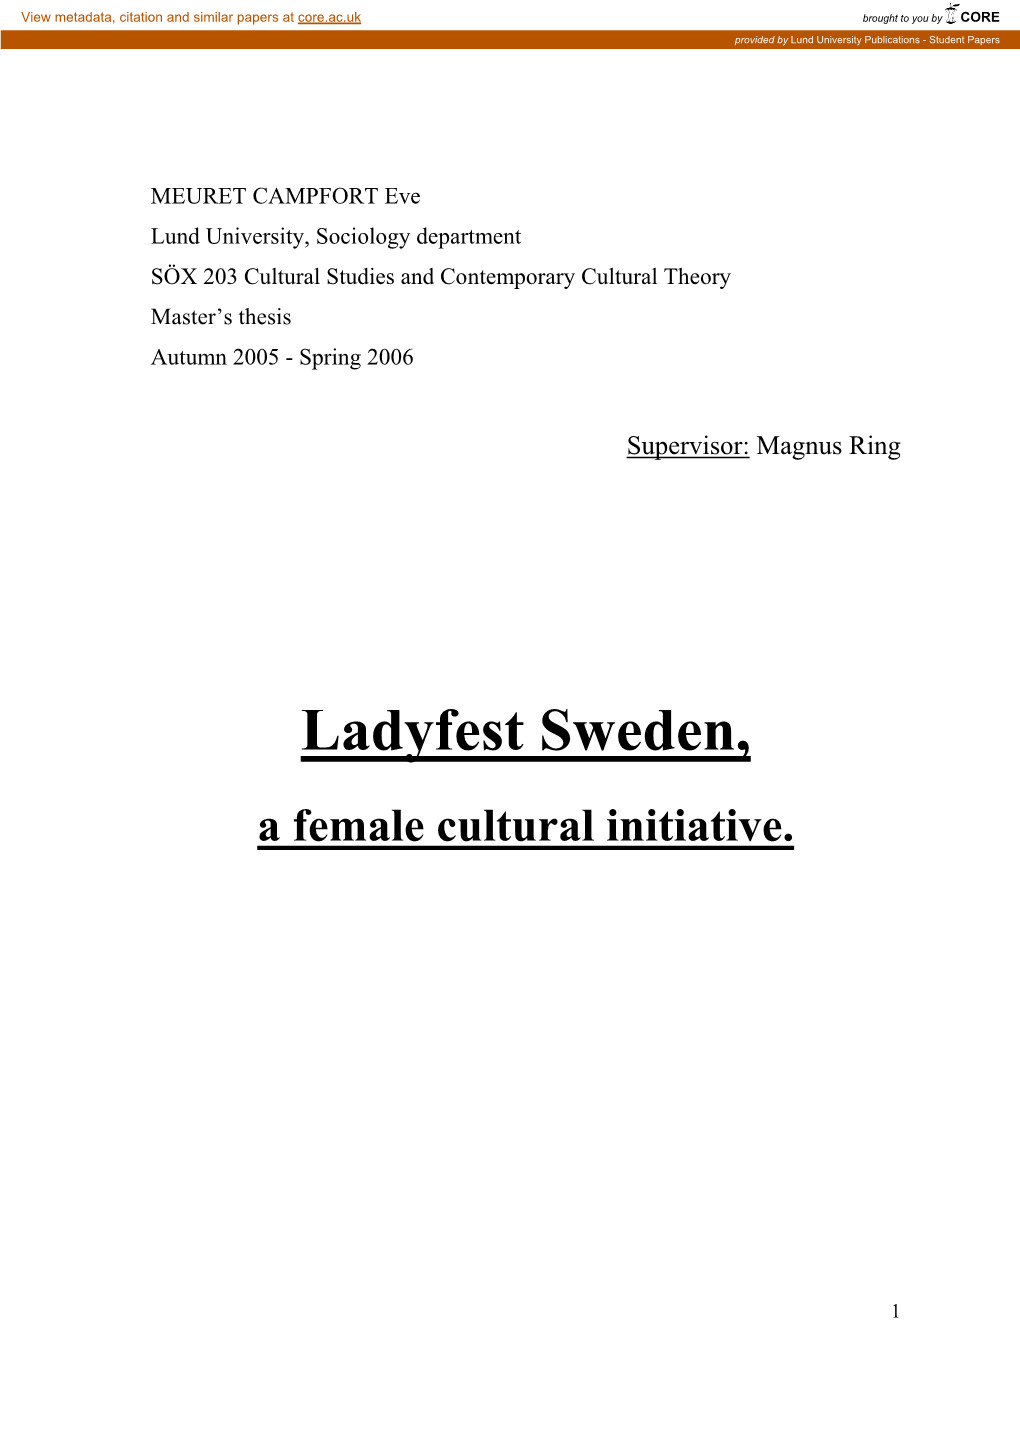 Ladyfest Sweden, a Female Cultural Initiative